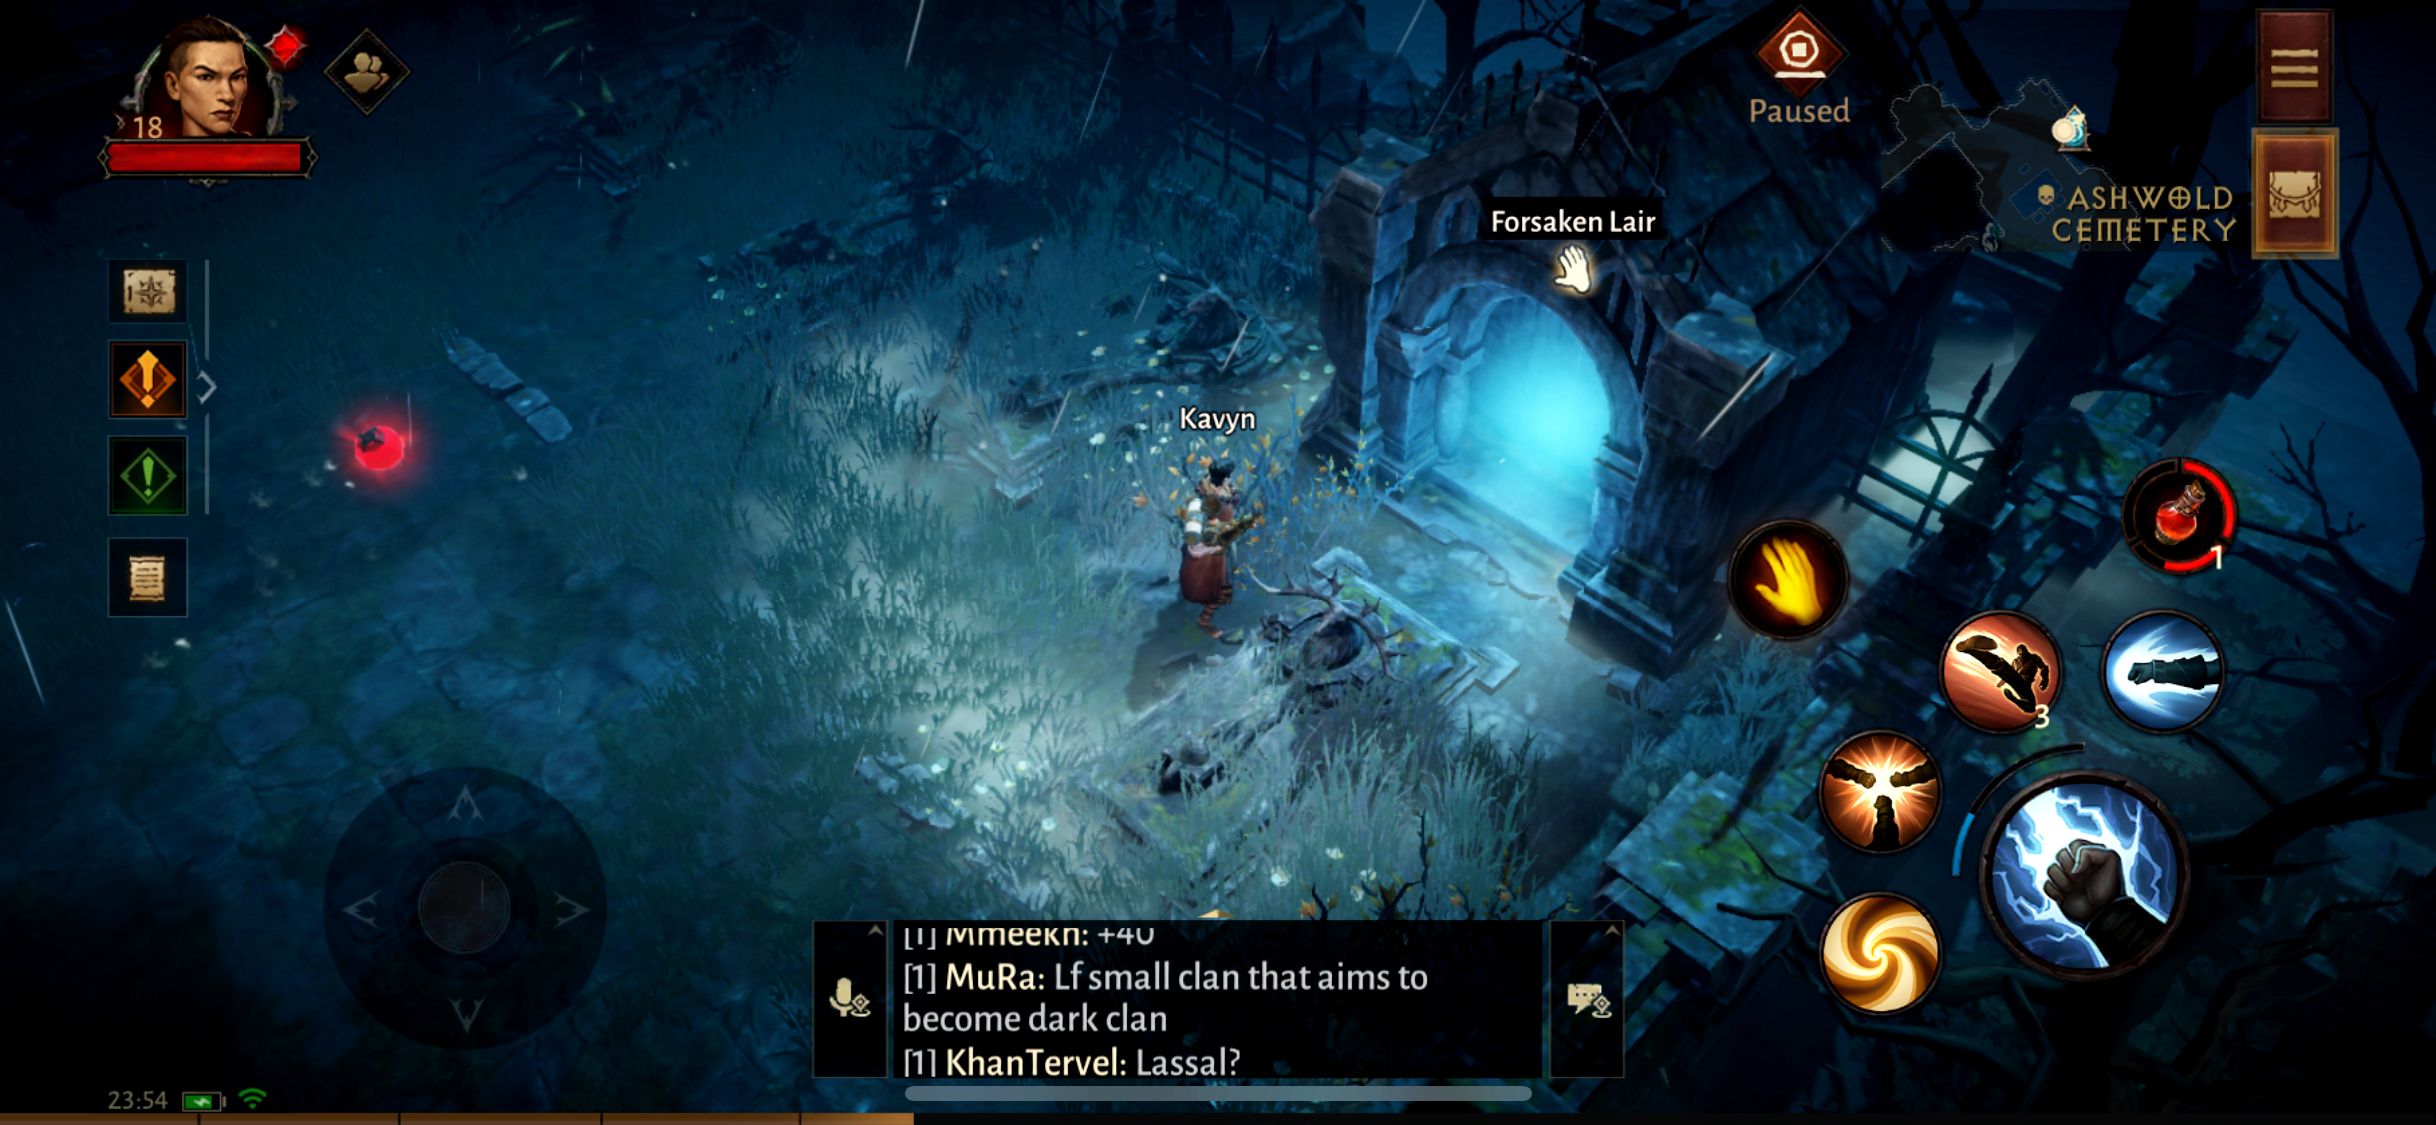 Diablo Immortal adventurer finds Hidden Lair in graveyard